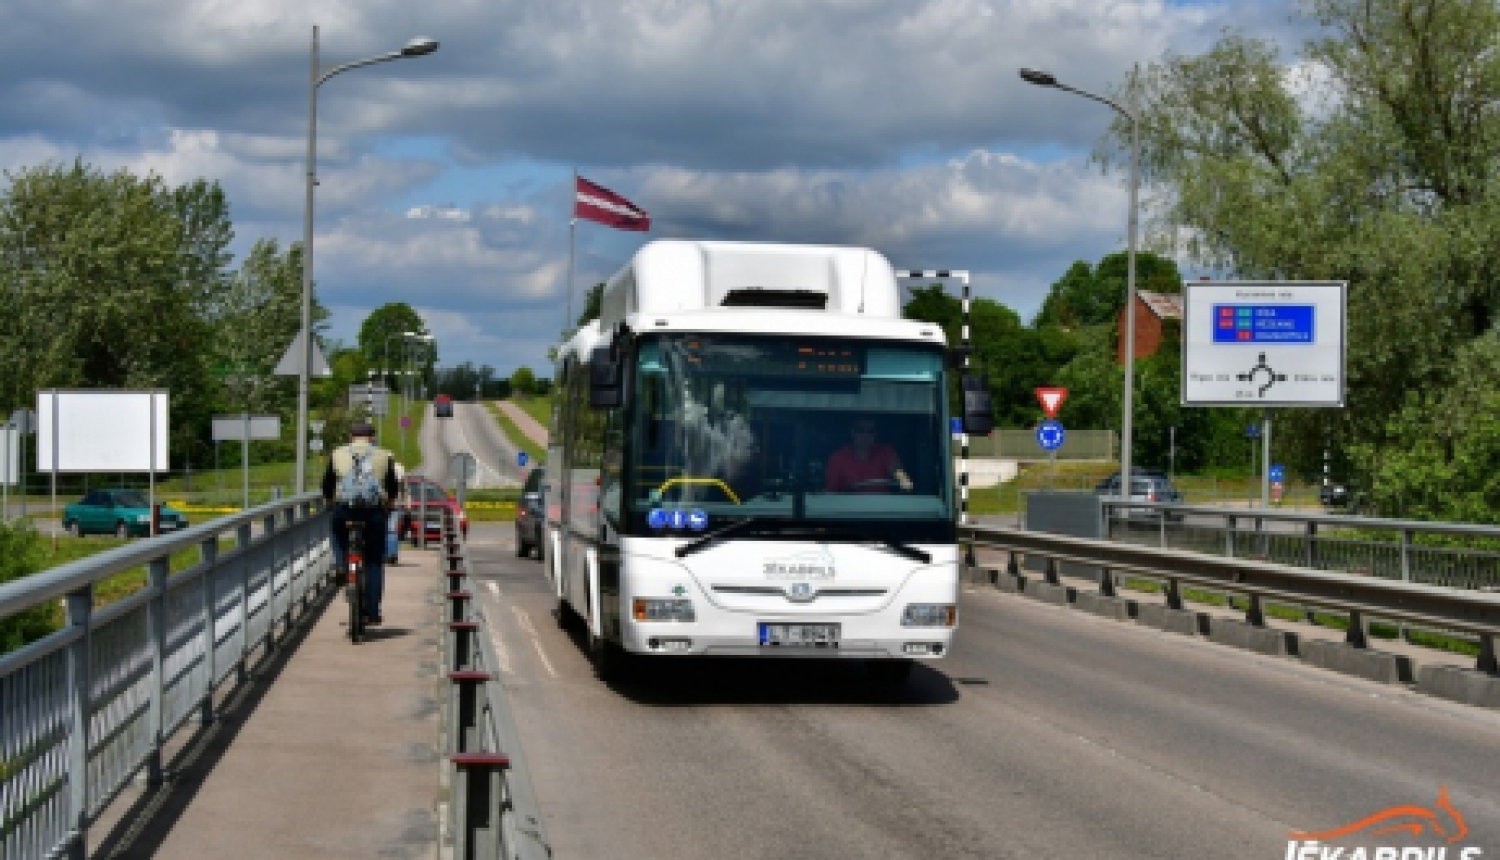 Sakarā ar vilcienu kustības sarakstu izmaiņām no 28.marta noteiktas izmaiņas Jēkabpils 5.maršruta autobusa atiešanas laikos